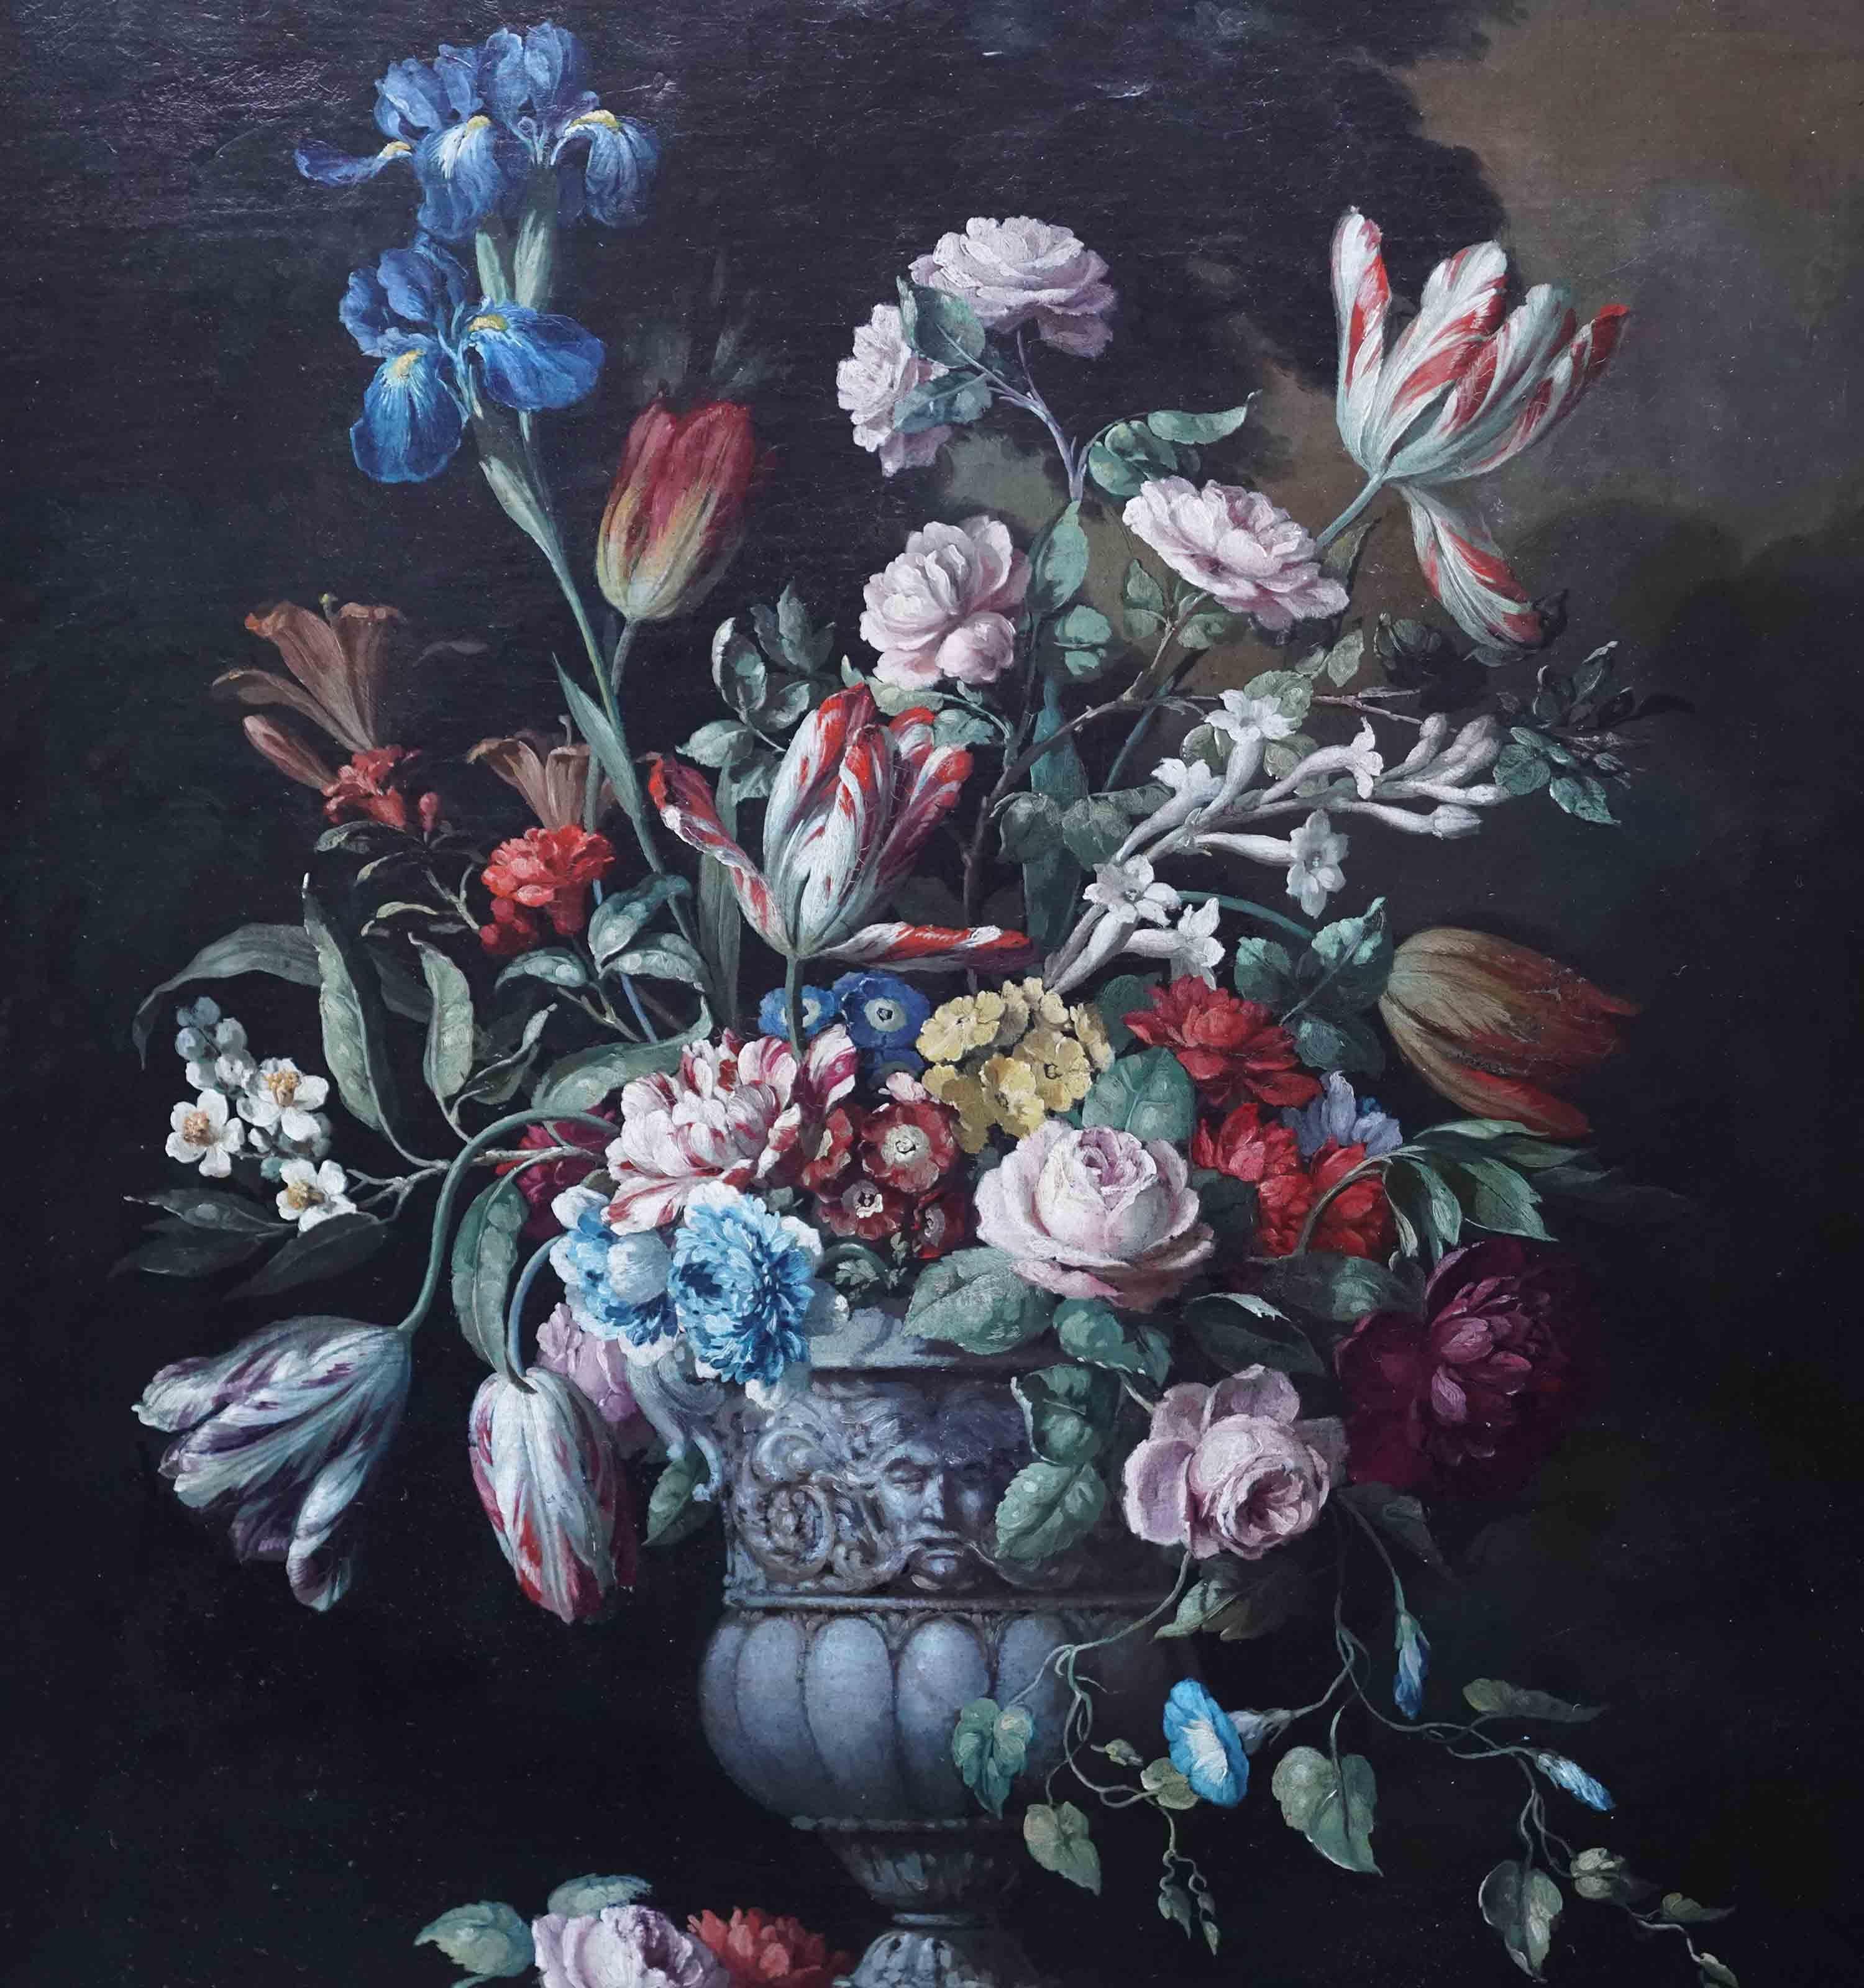 Diese hervorragende lebendige holländischen 18. Jahrhundert Altmeister floralen Ölgemälde ist auf Kreis von Gerard Van Spaendonck zugeschrieben. Um 1790 gemalt, ist es ein schönes gemischtes Blumenstillleben in einer verzierten Urne auf einem